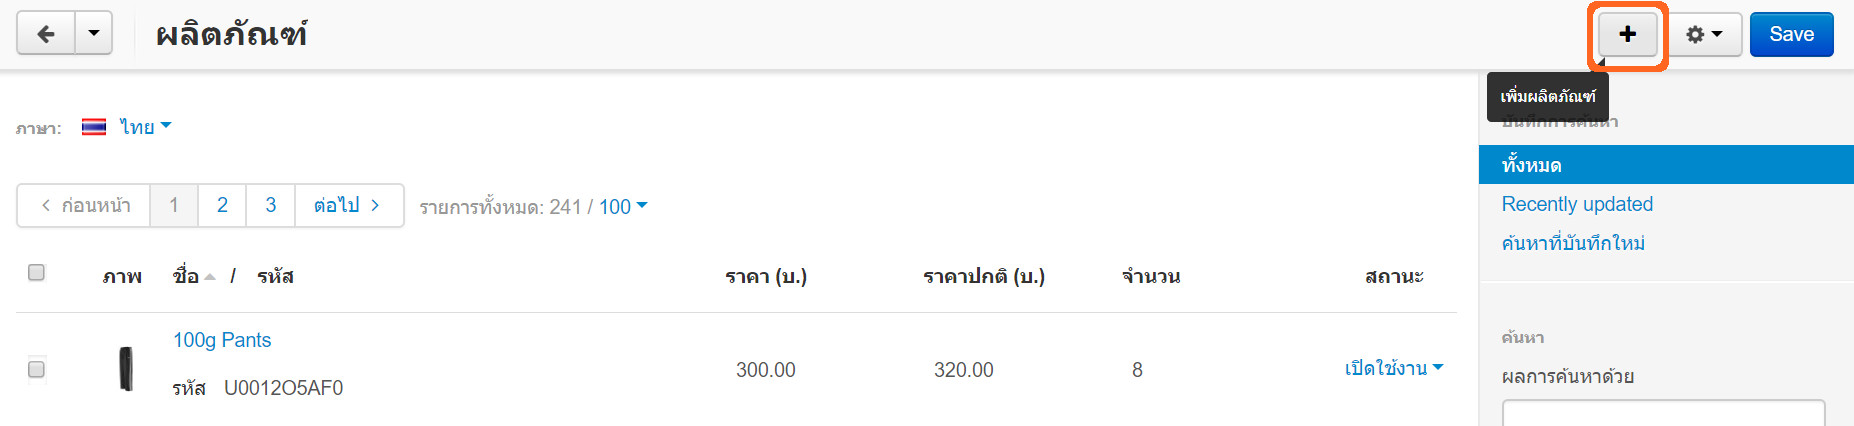 เว็บไซต์สำเร็จรูปไทย - คู่มือร้านออนไลน์ - ผลิตภัณฑ์ เพิ่มผลิตภัณฑ์ 1 รายการ